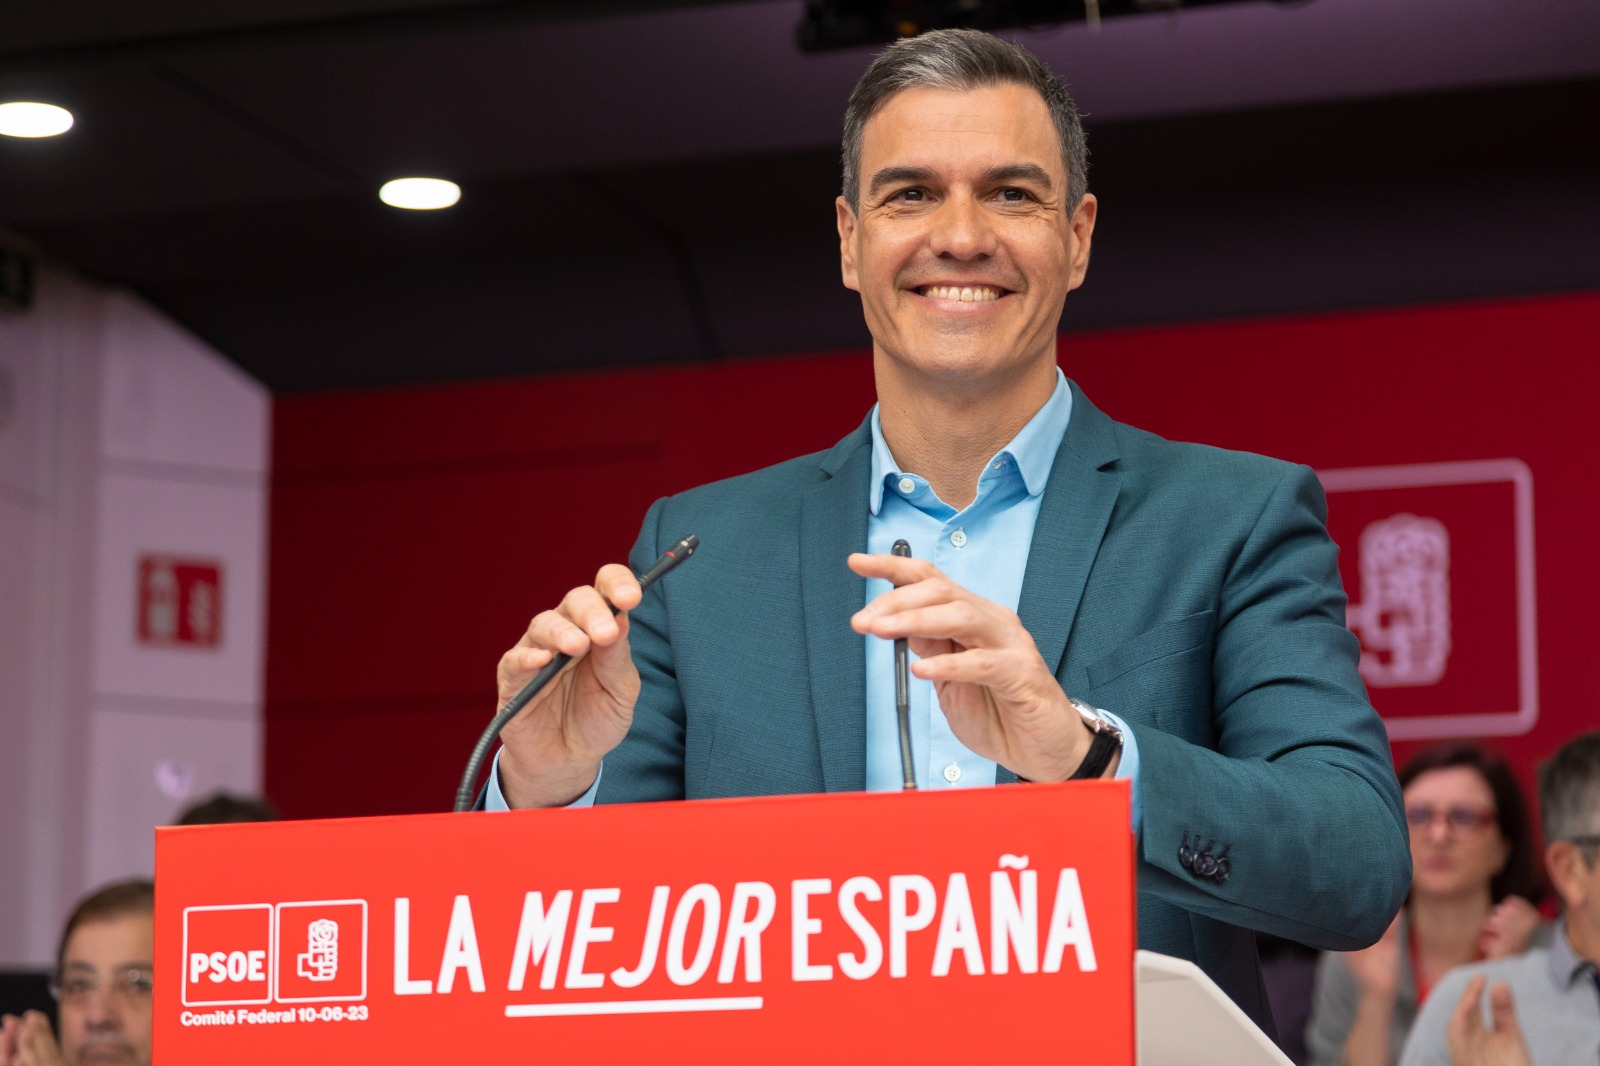 Sánchez alaba la gestión del Gobierno y aplaude el acuerdo entre Sumar y Podemos: “La victoria es posible”